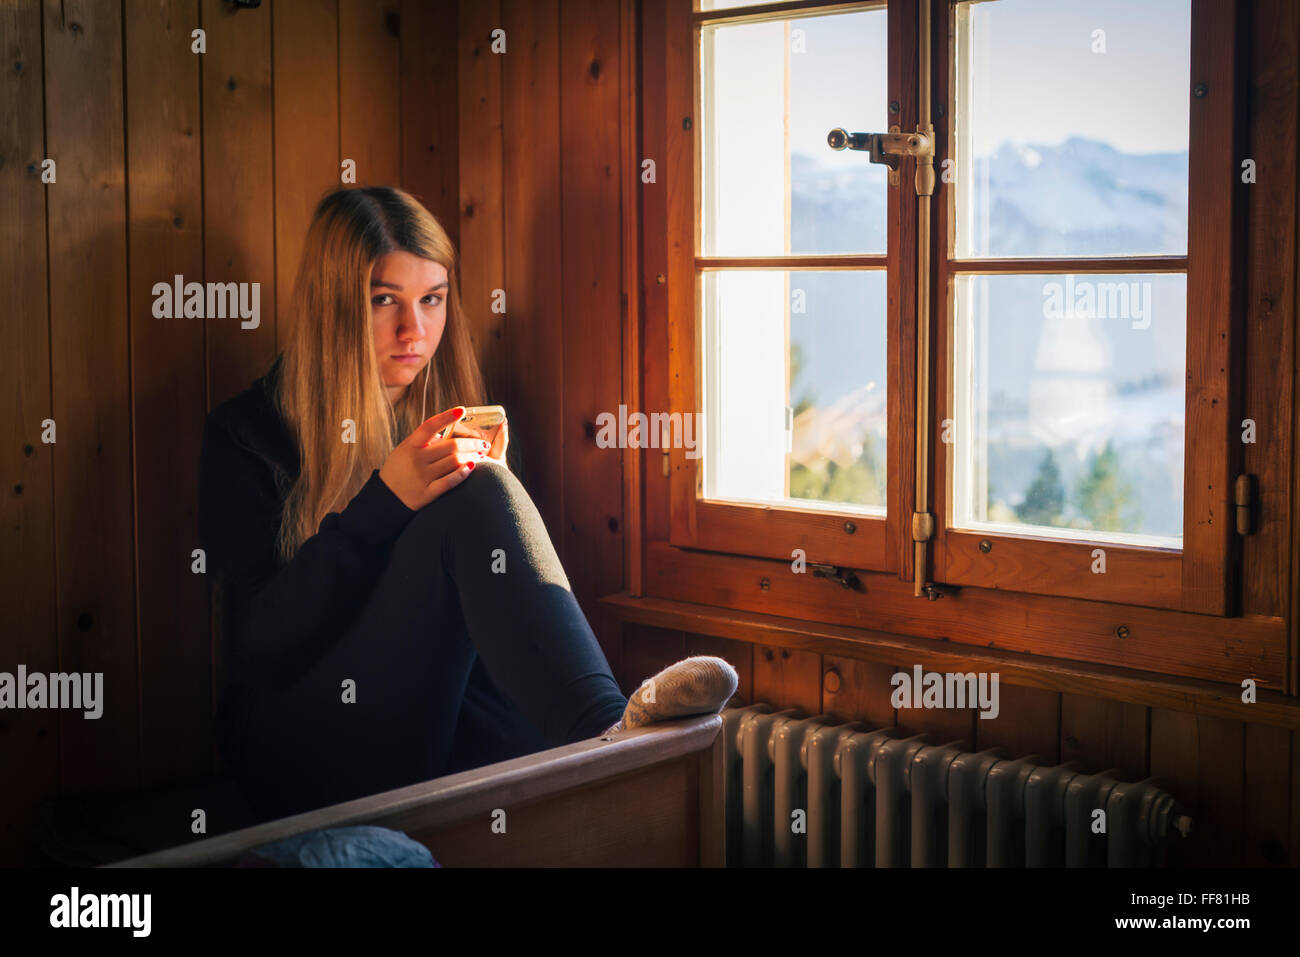 Junge Frau mit Smartphone in Kamera sitzt im Inneren Berghütte mit Holzverkleidung Wand hinter dem Fenster Stockfoto